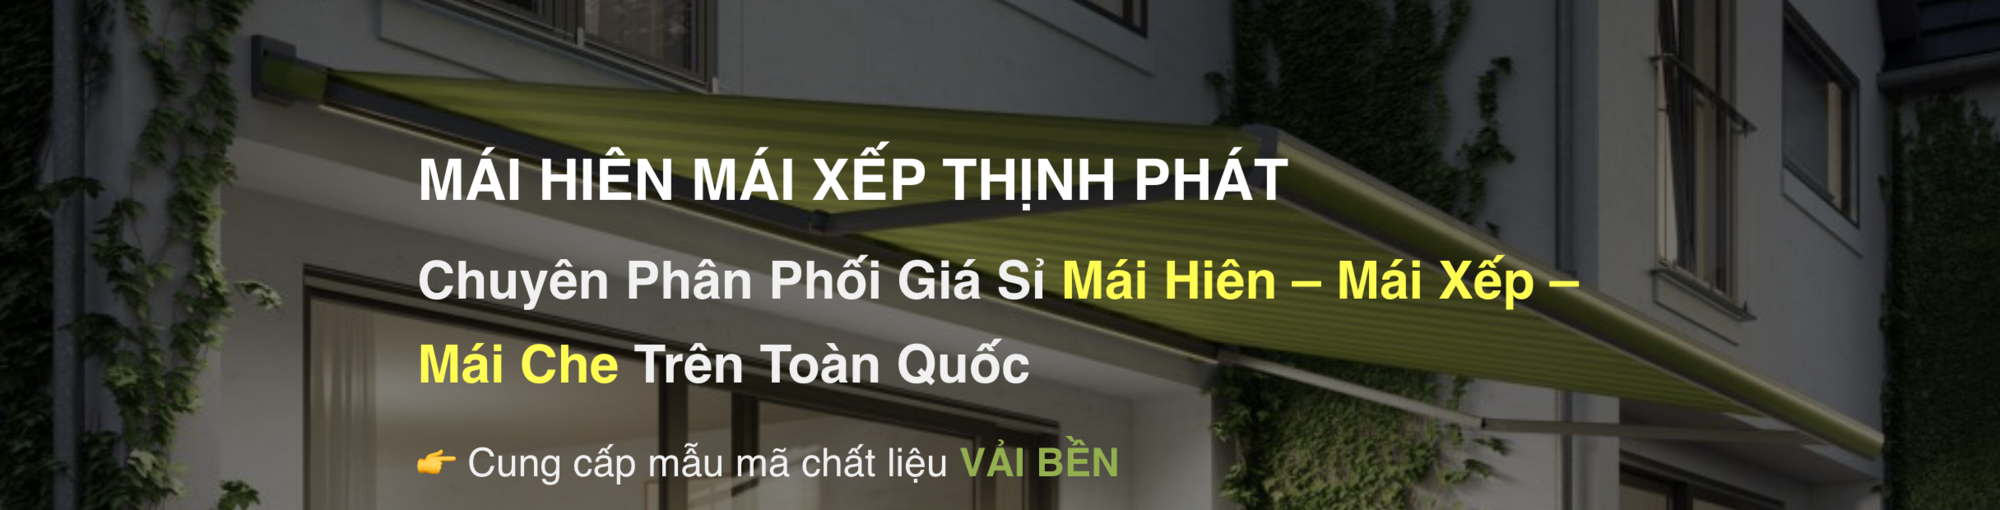 Mái Hiên Mái Xếp Thịnh Phát's background image'